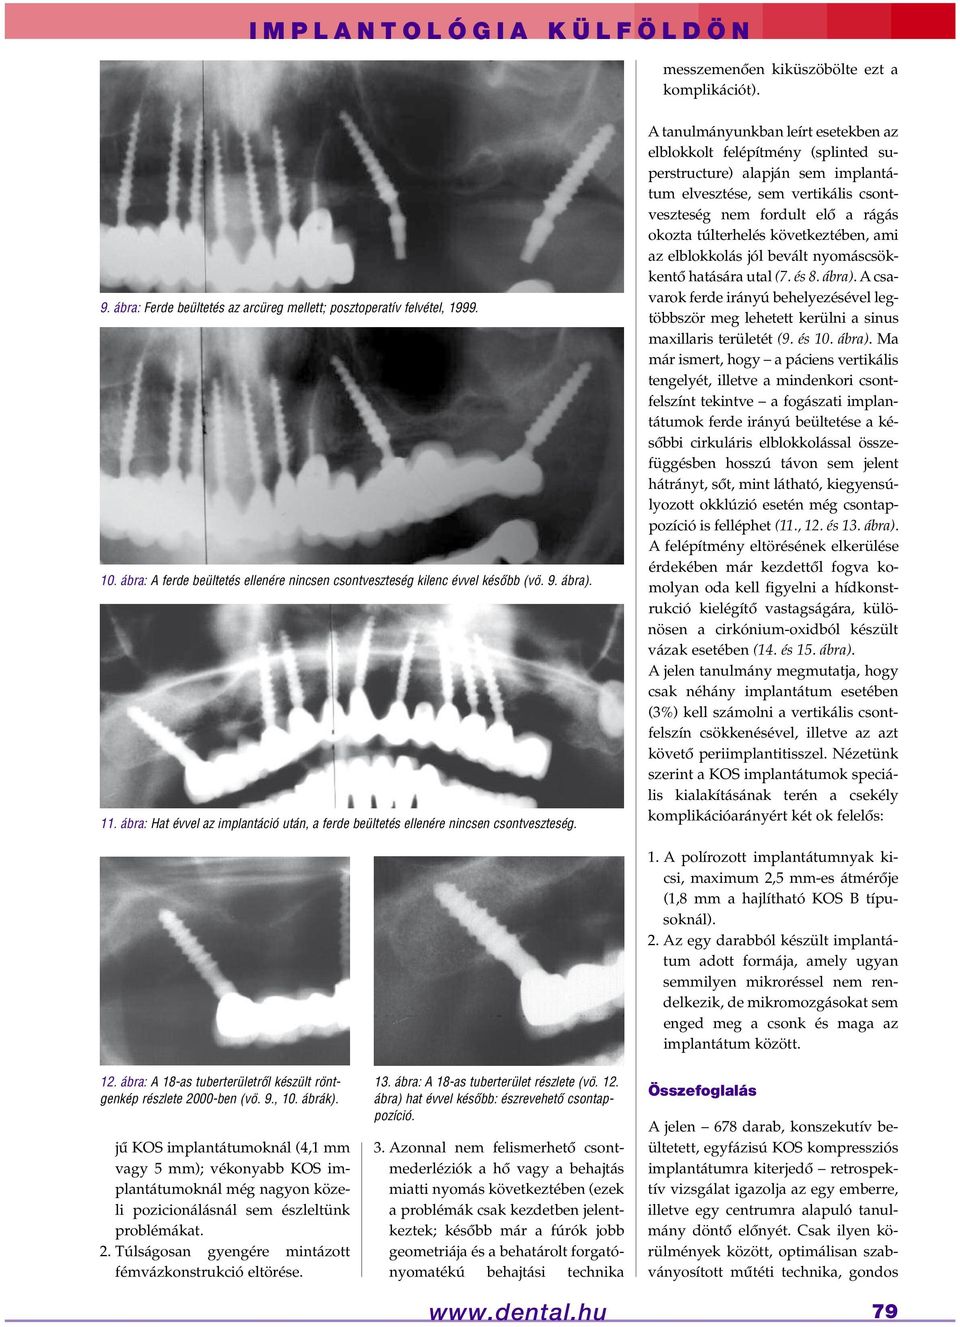 A tanulmányunkban leírt esetekben az elblokkolt felépítmény (splinted superstructure) alapján sem implantátum elvesztése, sem vertikális csontveszteség nem fordult elô a rágás okozta túlterhelés